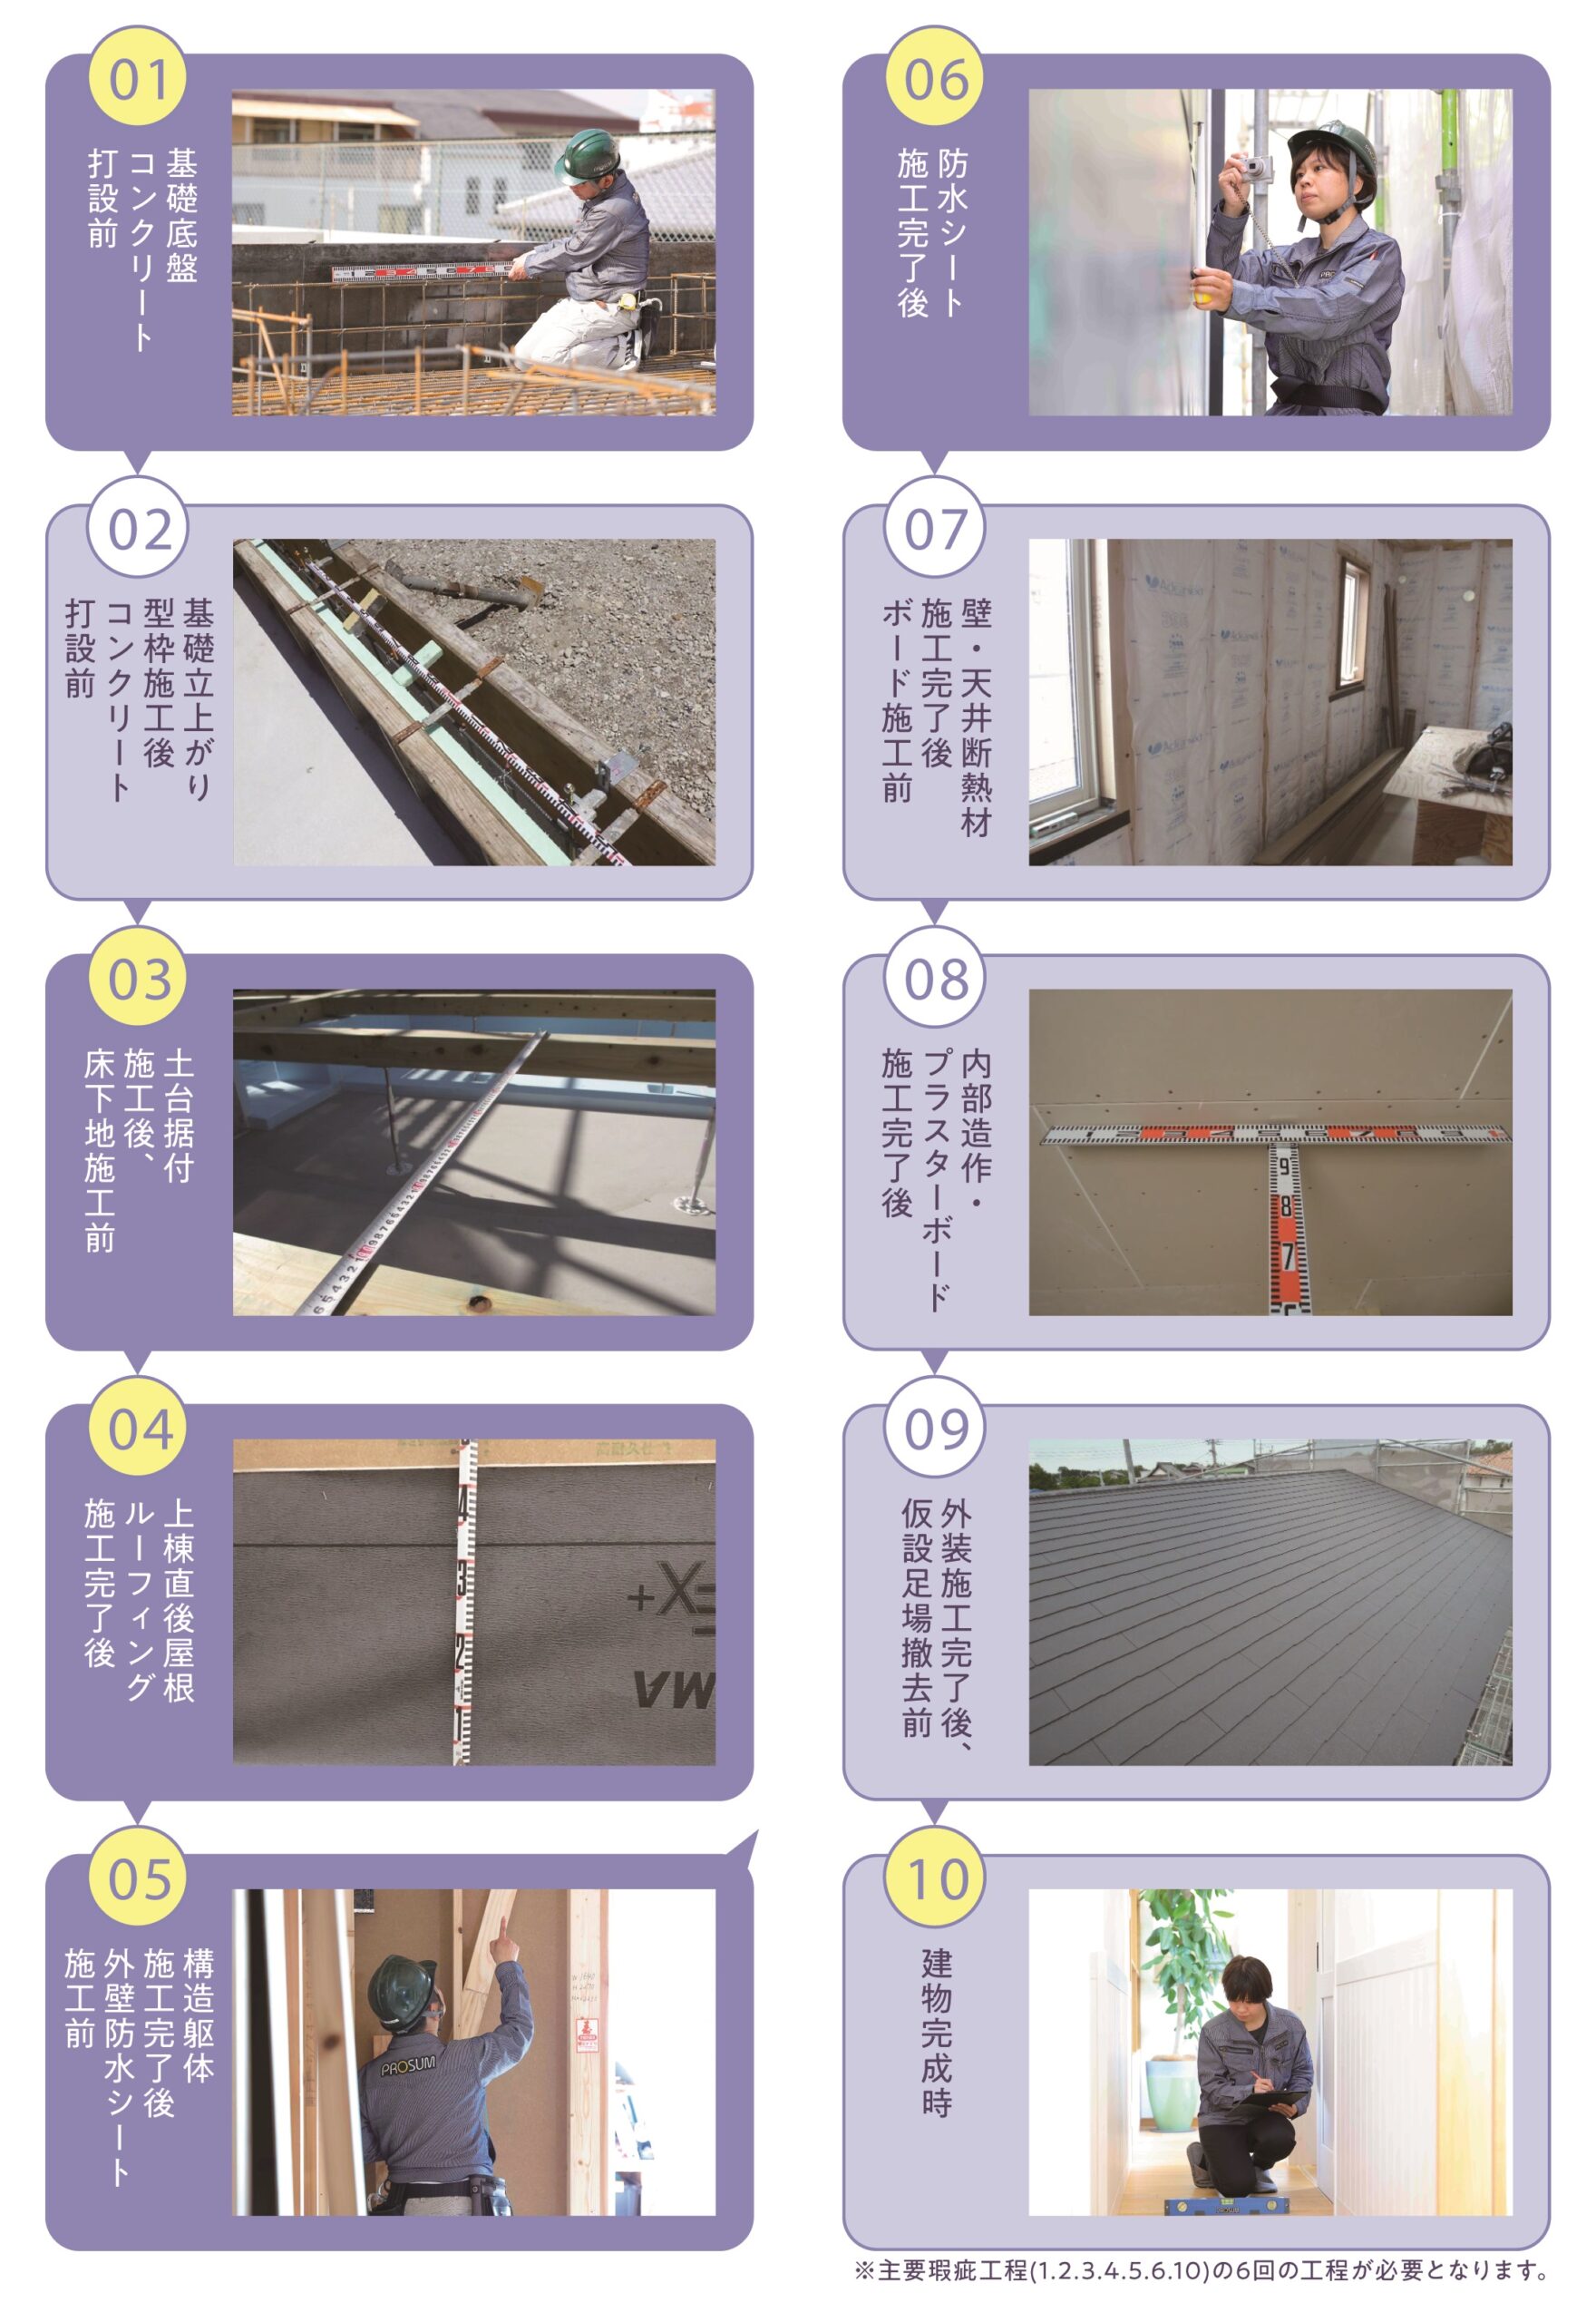 松江市で省エネ住宅を施工する林谷ホームの10回監査画像